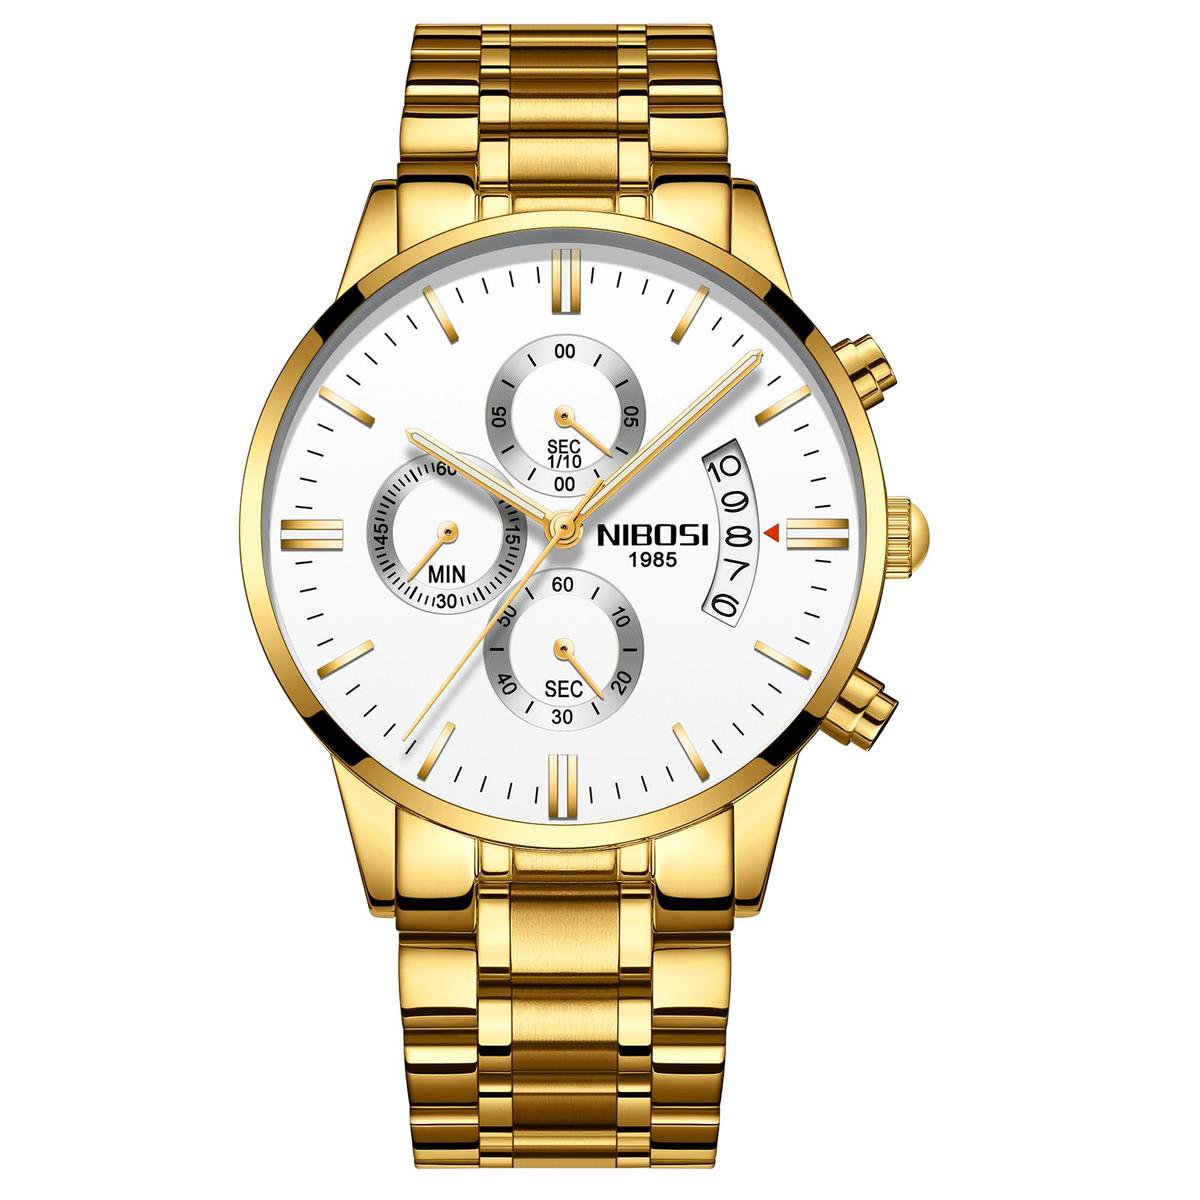 NIBOSI Horloges voor mannen - Horloge mannen – Luxe Goud/Wit Design - Heren horloge - Ø 42 mm – Goud/Wit - Roestvrij Staal - Waterdicht tot 3 bar - Chronograaf - Geschenkset met verstelbare pin